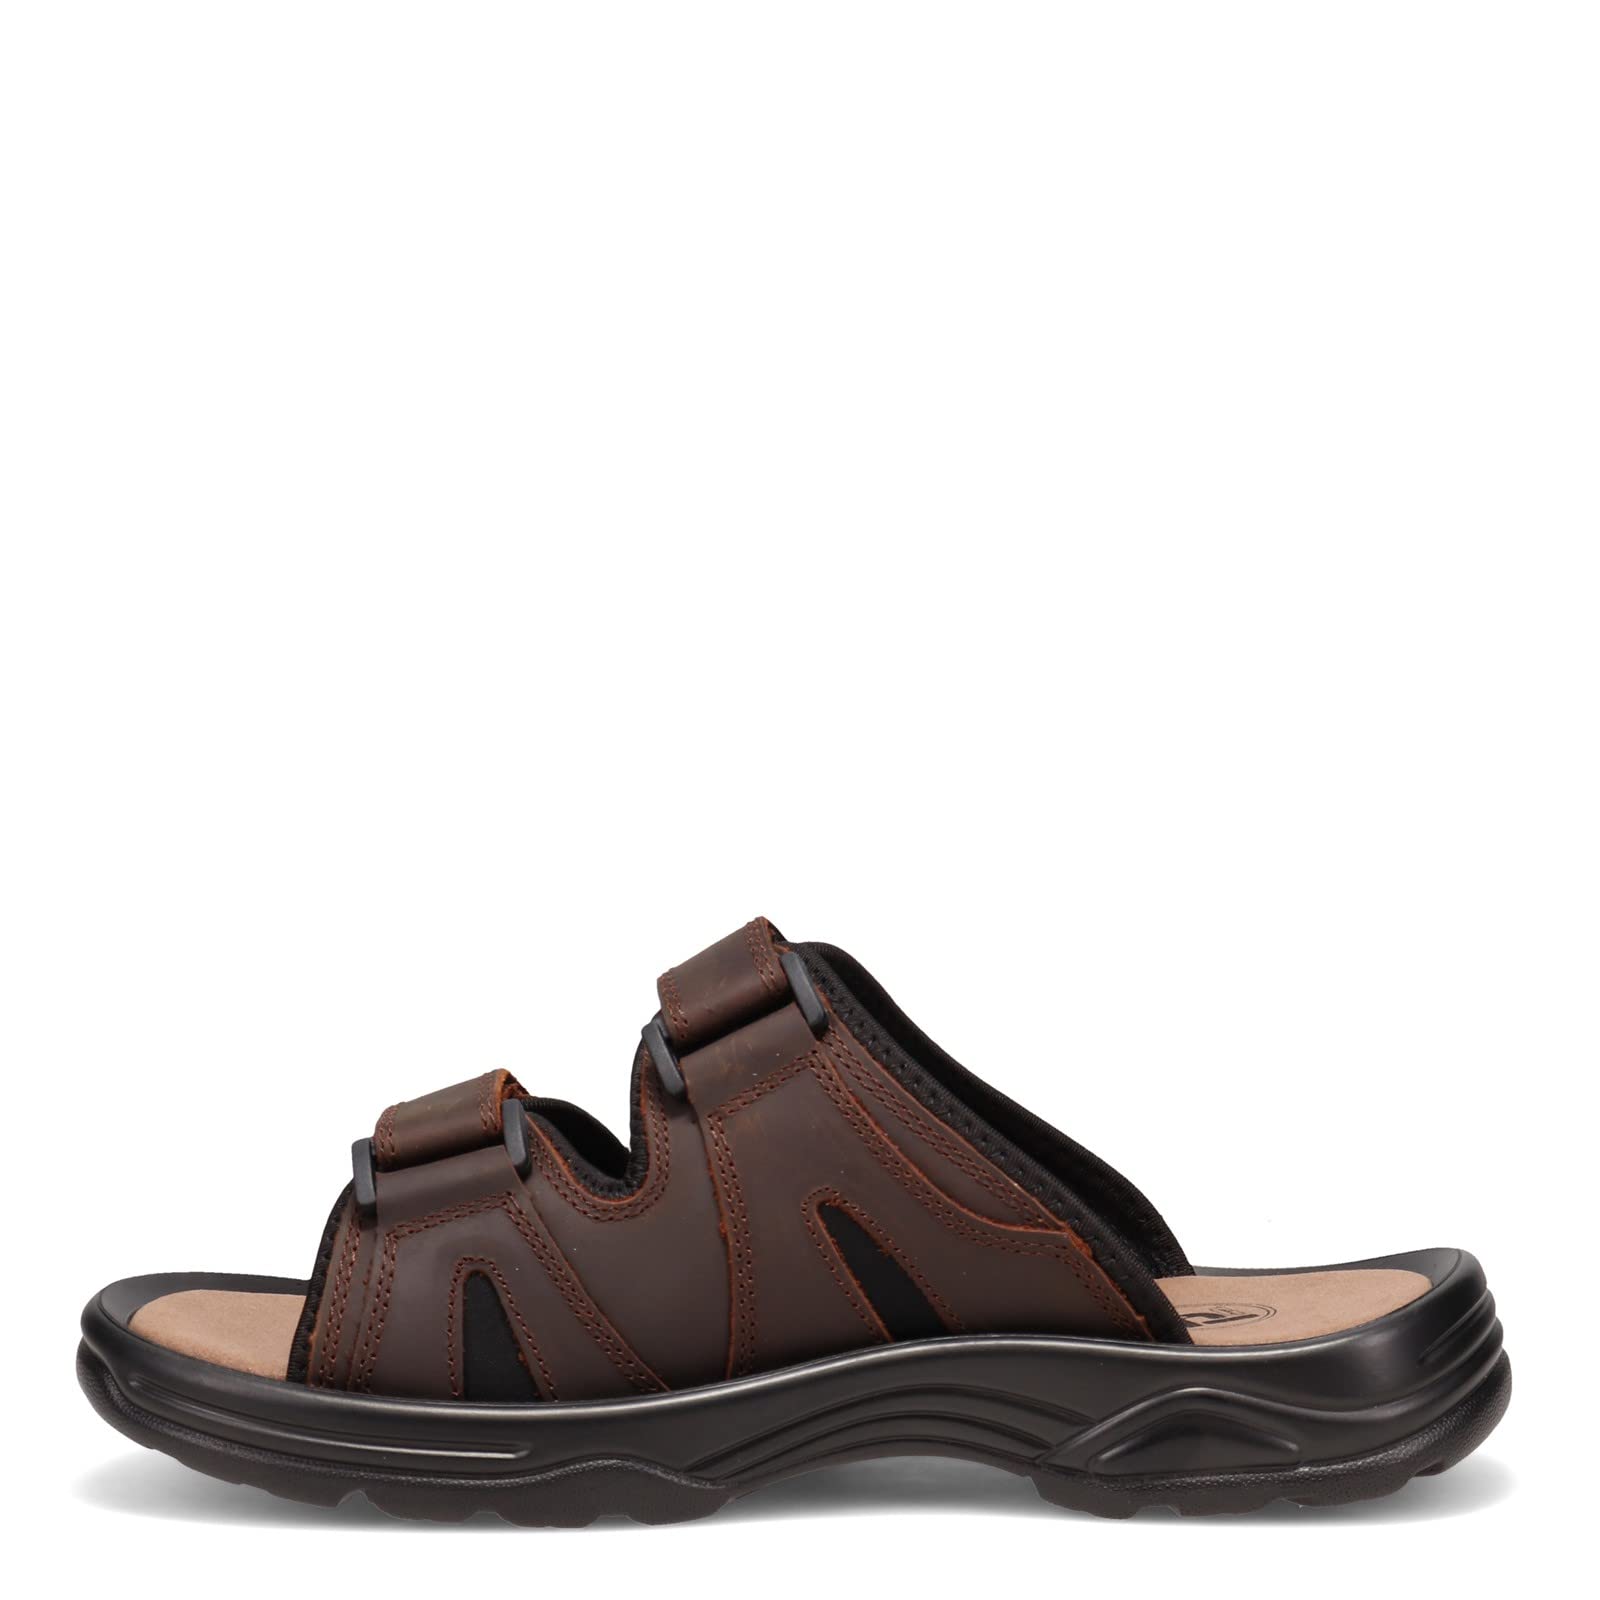 Propét Men's Vero Slide Sandal